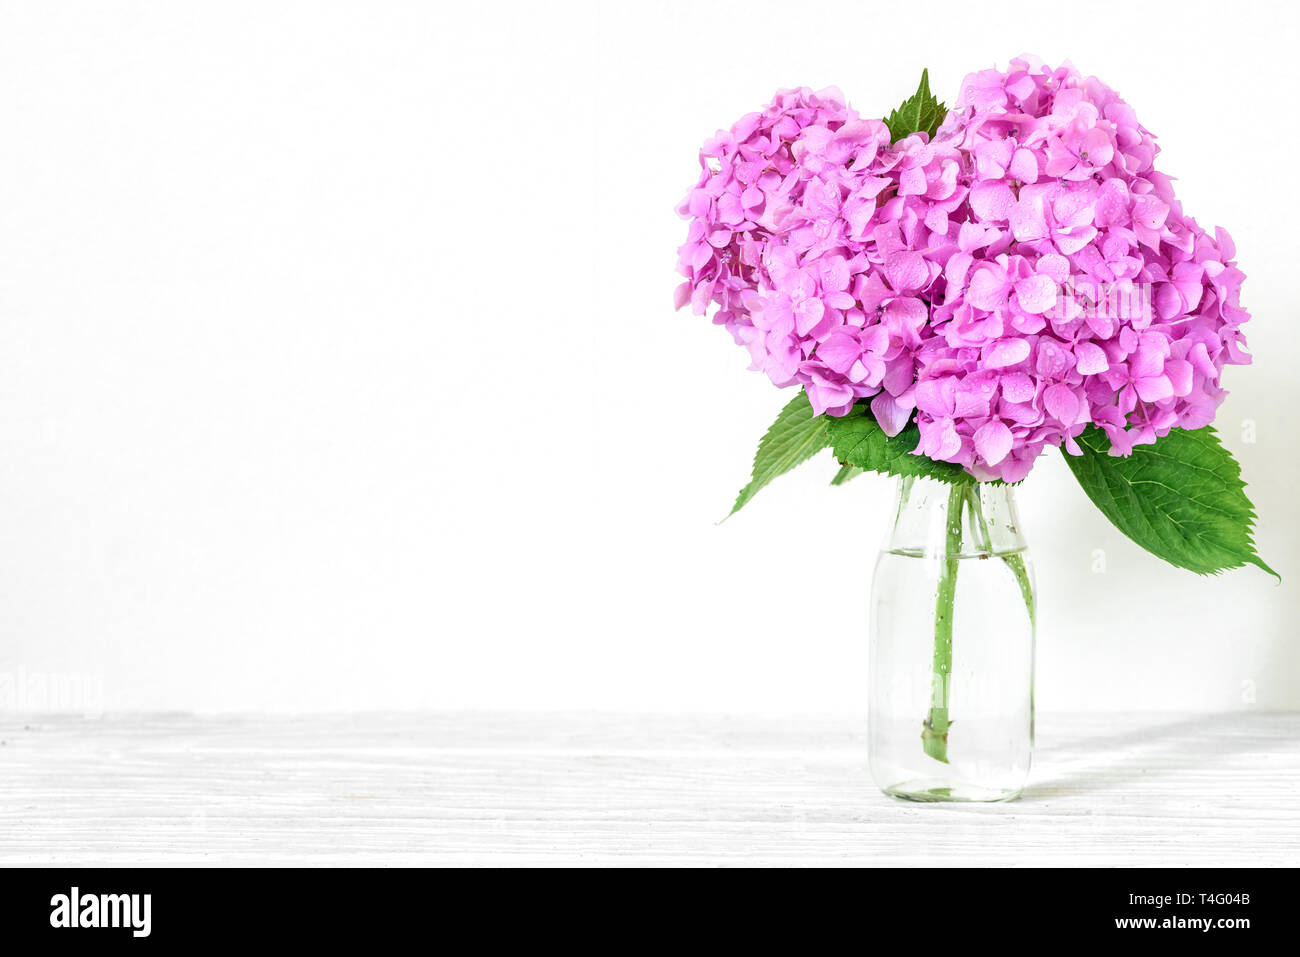 Noch immer leben mit einem schönen Blumenstrauß rosa Hortensie Blumen. Urlaub oder Hochzeit Hintergrund. Grußkarte Stockfoto